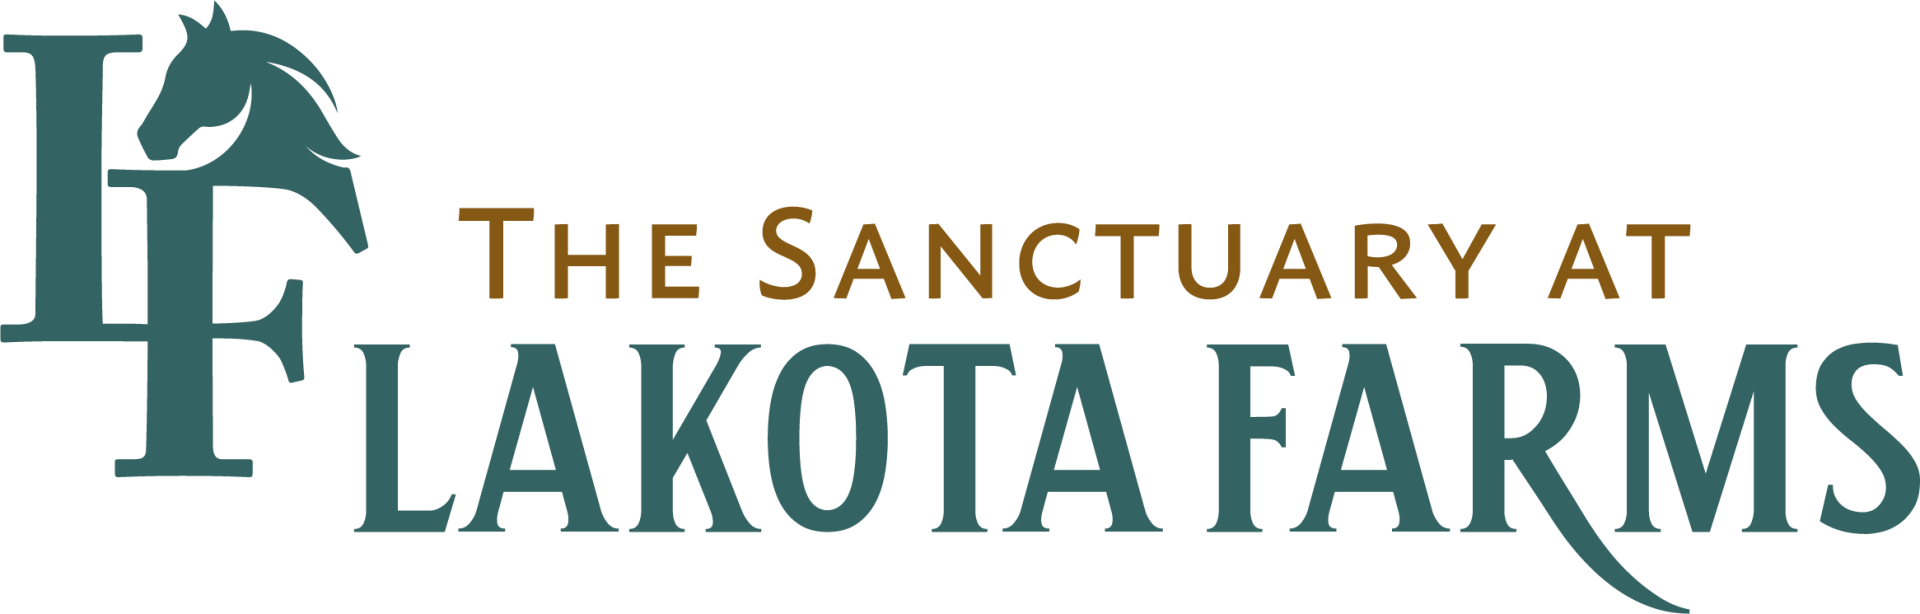 The Sanctuary at Lakota Farms